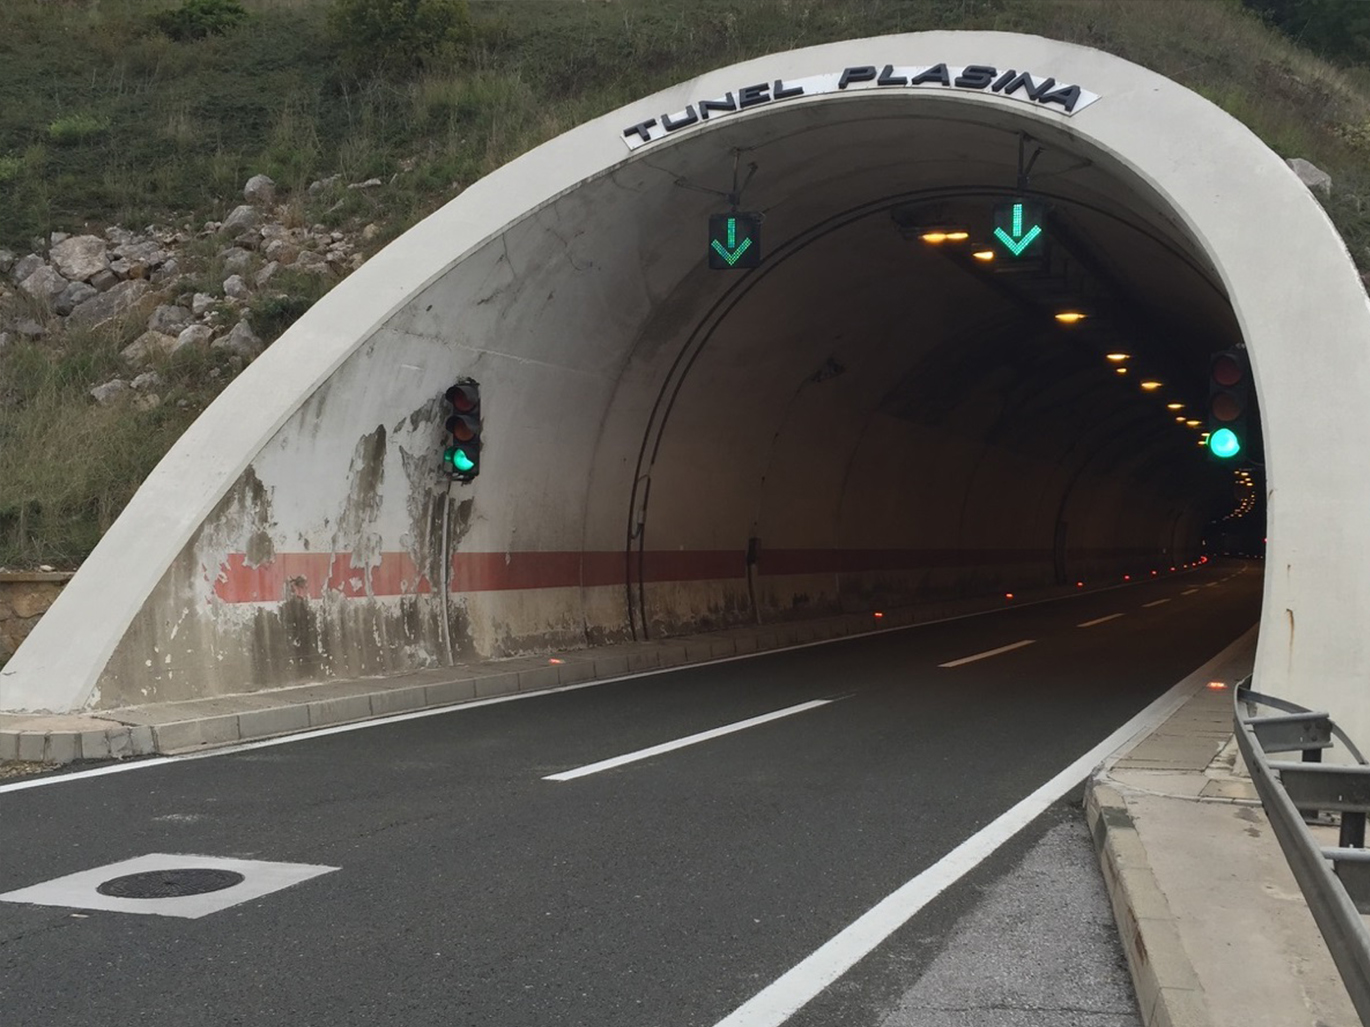 Tunel Plasina - A1